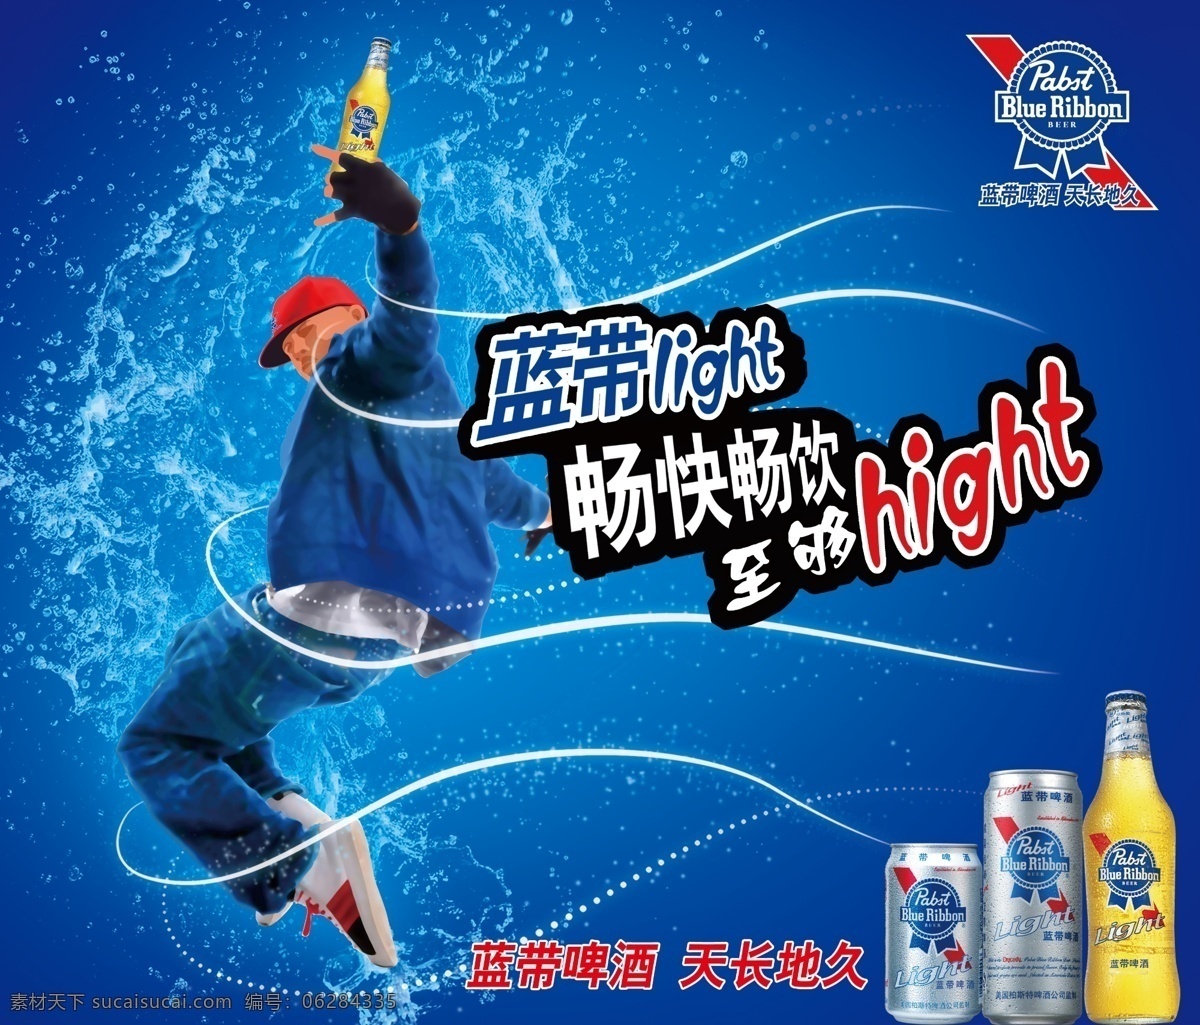 蓝带啤酒海报 模版下载 蓝带啤酒 啤酒 舞蹈 夜场 活力 广告设计模板 源文件